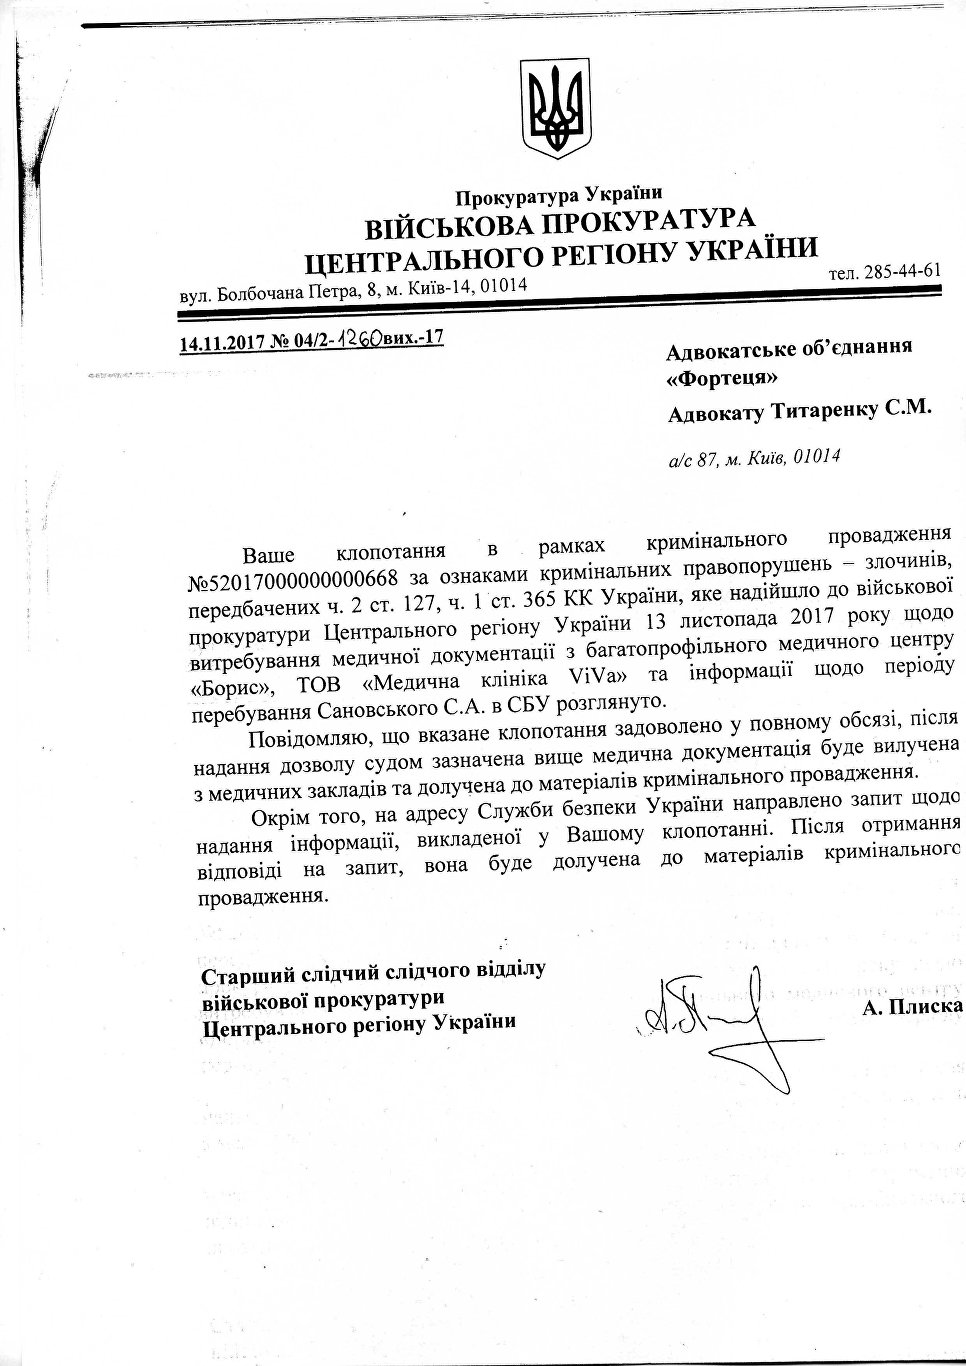 Письмо из военной прокуратуры адвокату Сергея Сановского Сергею Титоренко по поводу медицинских документов, подтверждающих факт избиения Сановского в СБУ.